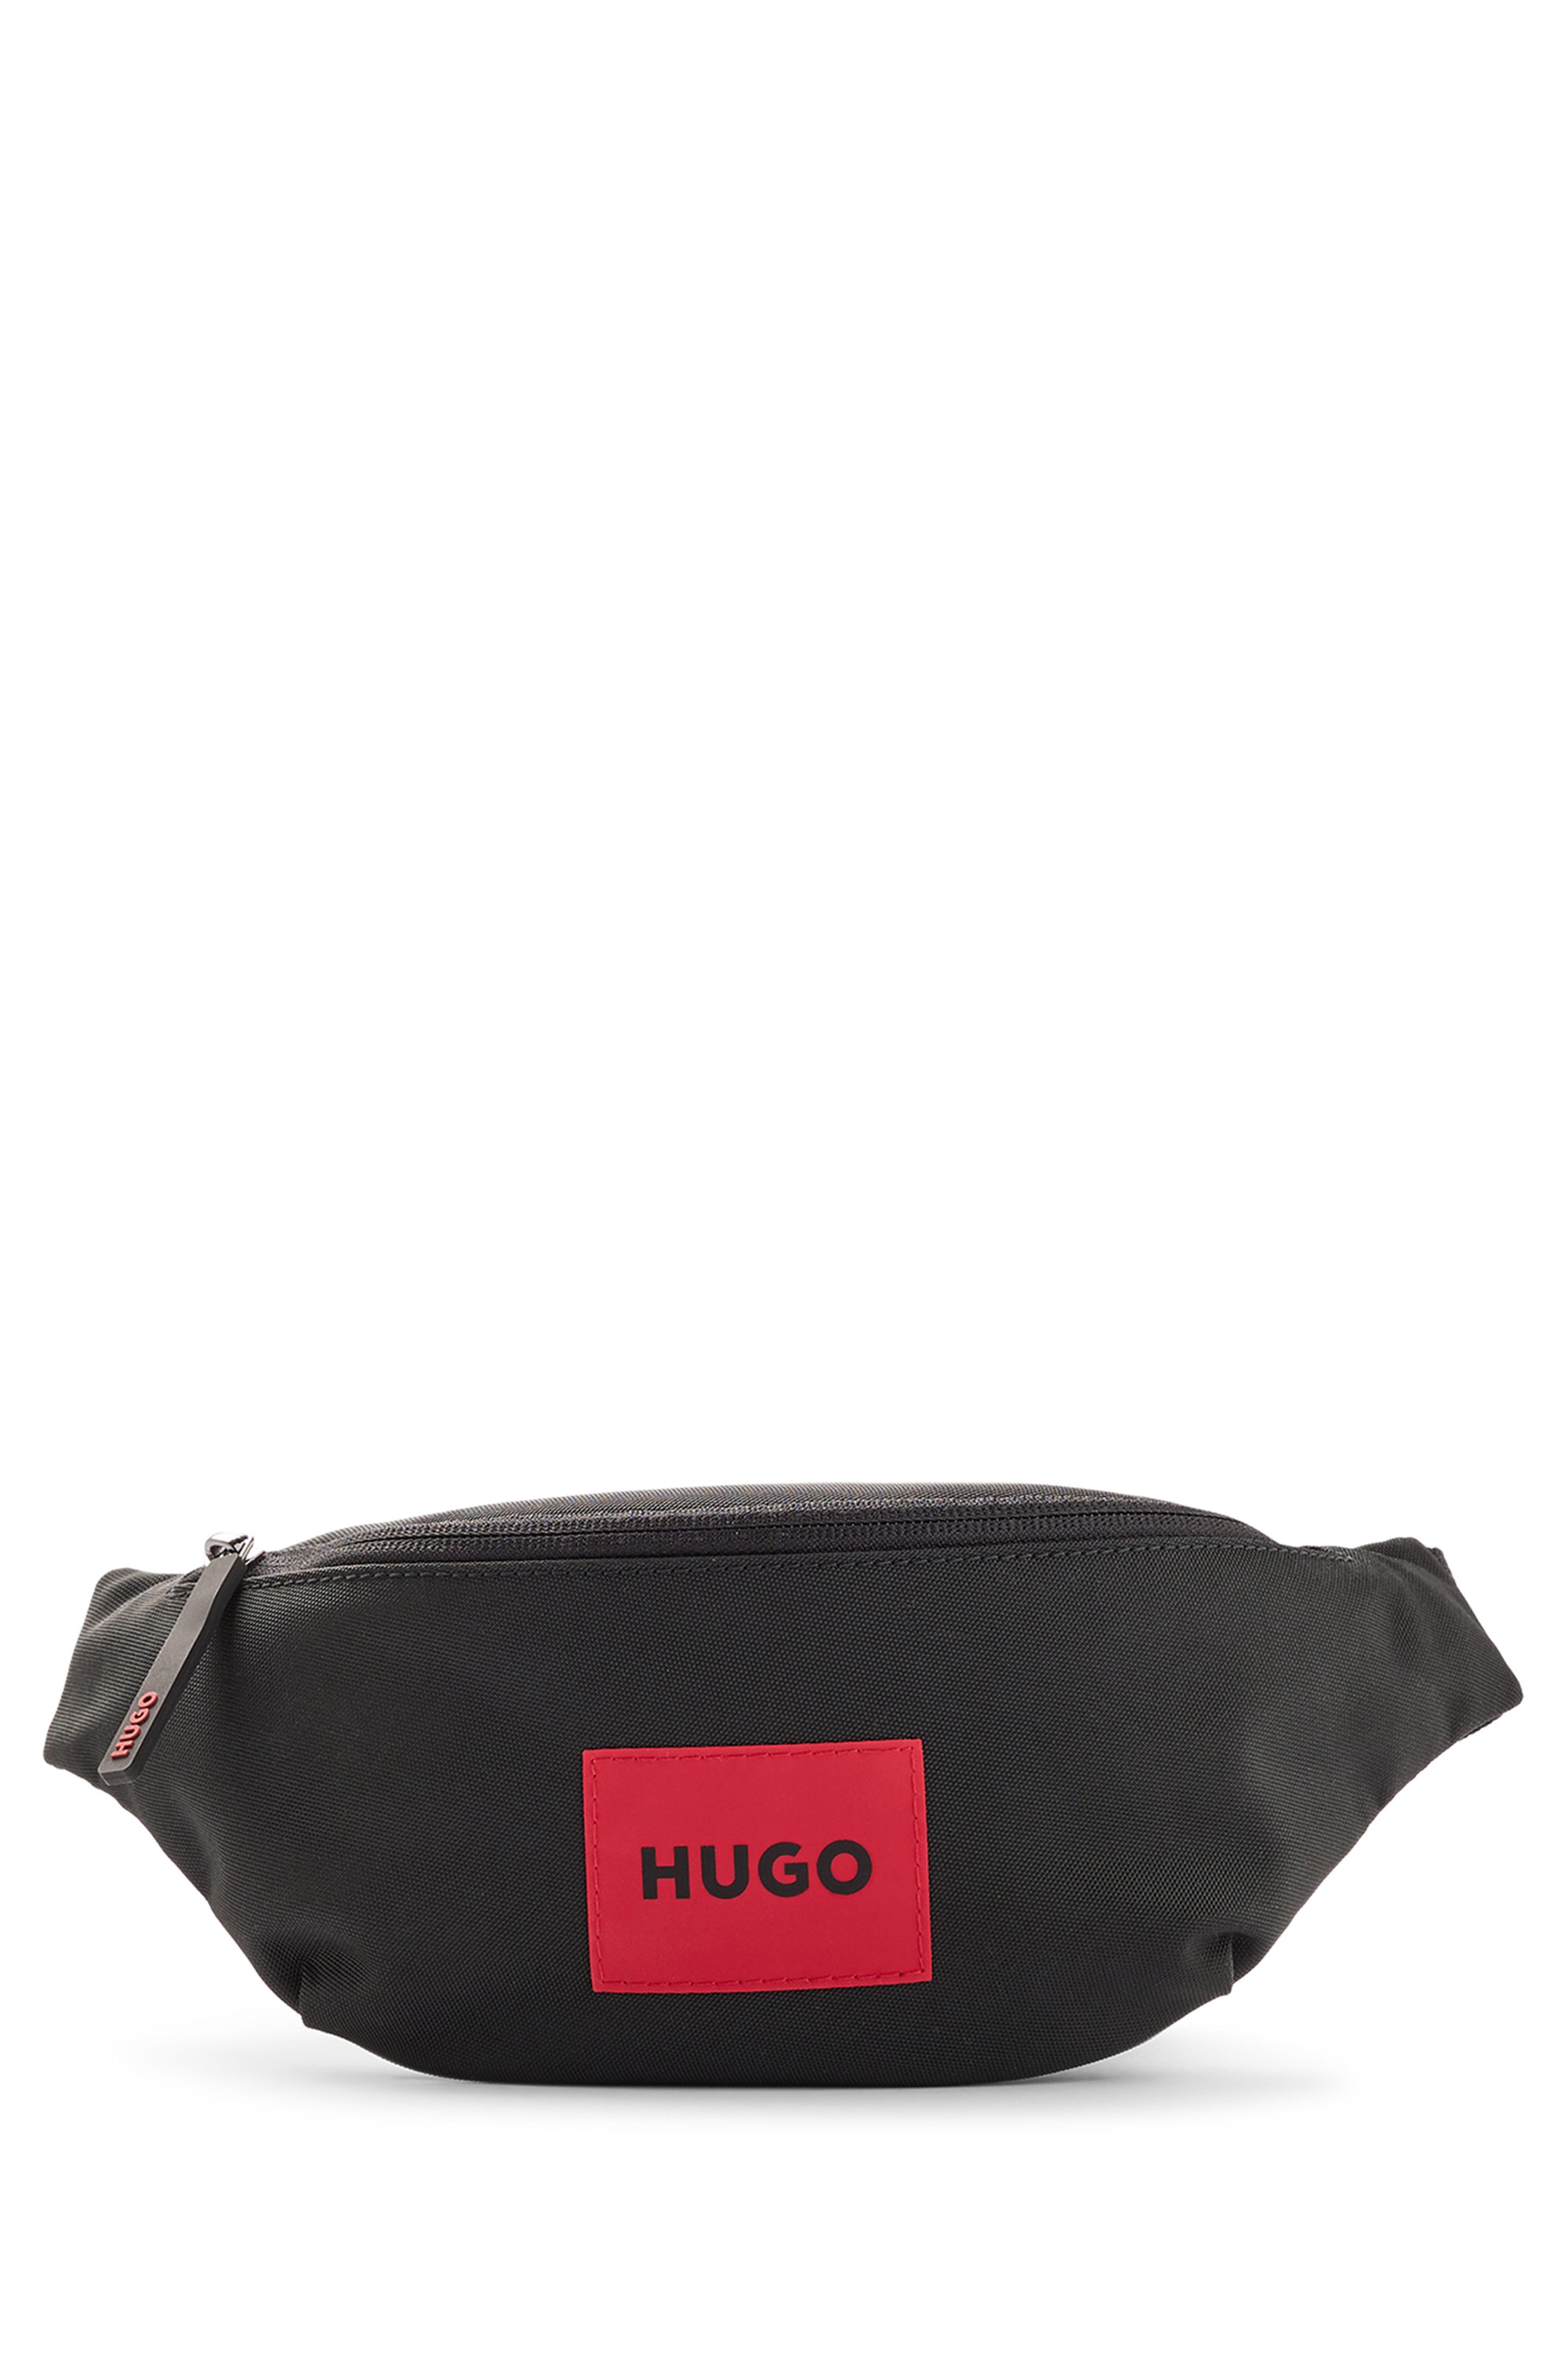 Sac ceinture en nylon recyclé avec étiquette logo rouge, Noir